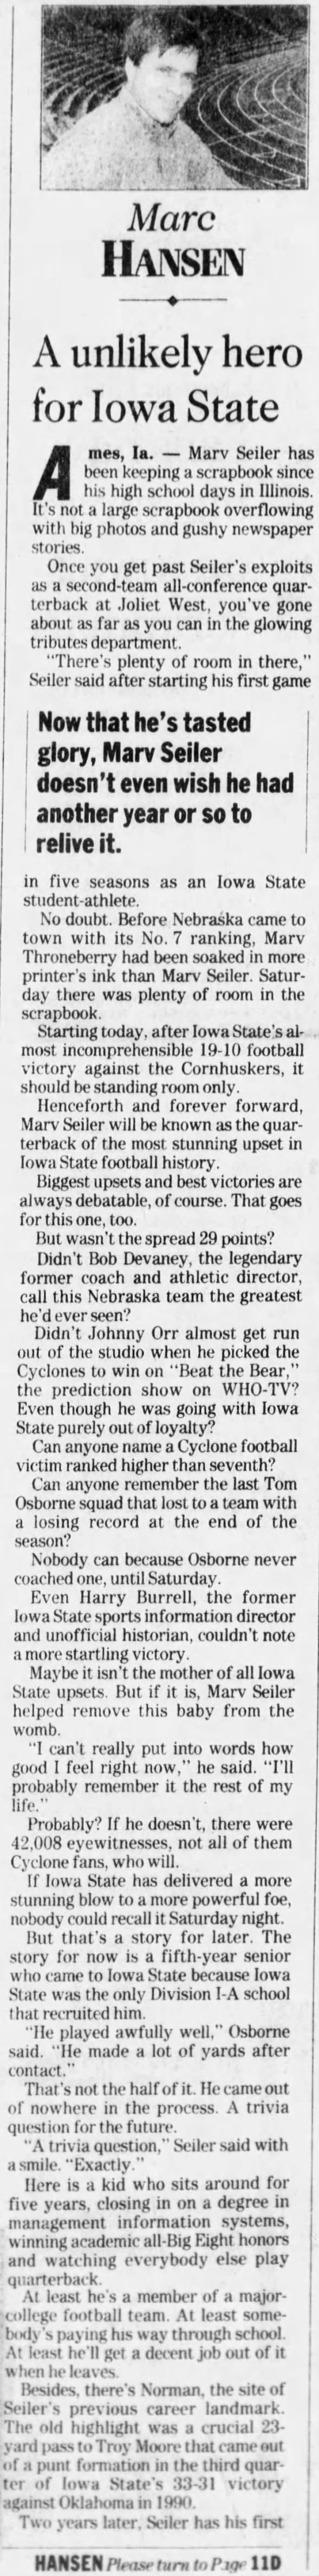 1992 Nebraska-Iowa football, Marc Hansen column 1